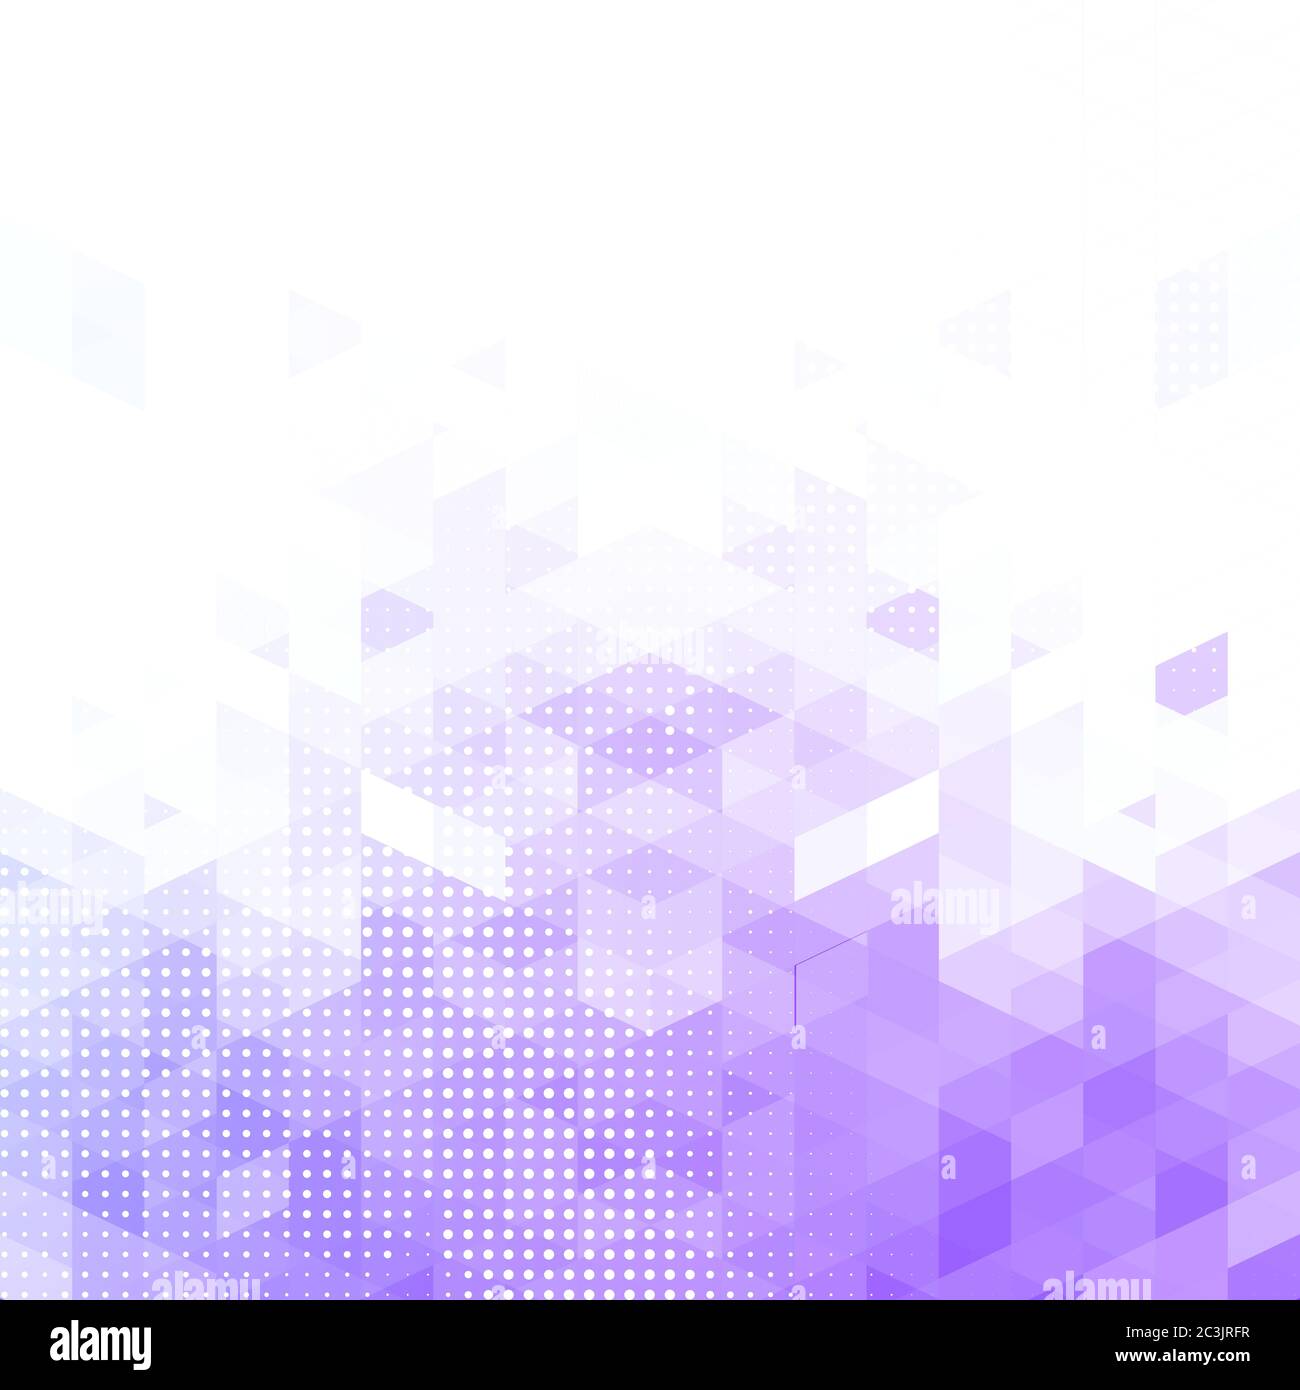 Hình nền hình học tím hiệu ứng pixel và chấm (Pixel and dots effect purple geometric abstract pattern background): Nếu bạn đang tìm kiếm một hình nền độc đáo và ấn tượng, hình nền hình học tím với hiệu ứng pixel và chấm là lựa chọn tuyệt vời dành cho bạn. Với sự kết hợp giữa những hình khối tím đầy bắt mắt và hiệu ứng pixel độc đáo, hình ảnh này sẽ mang đến cho bạn một trải nghiệm đầy mới lạ và thú vị.